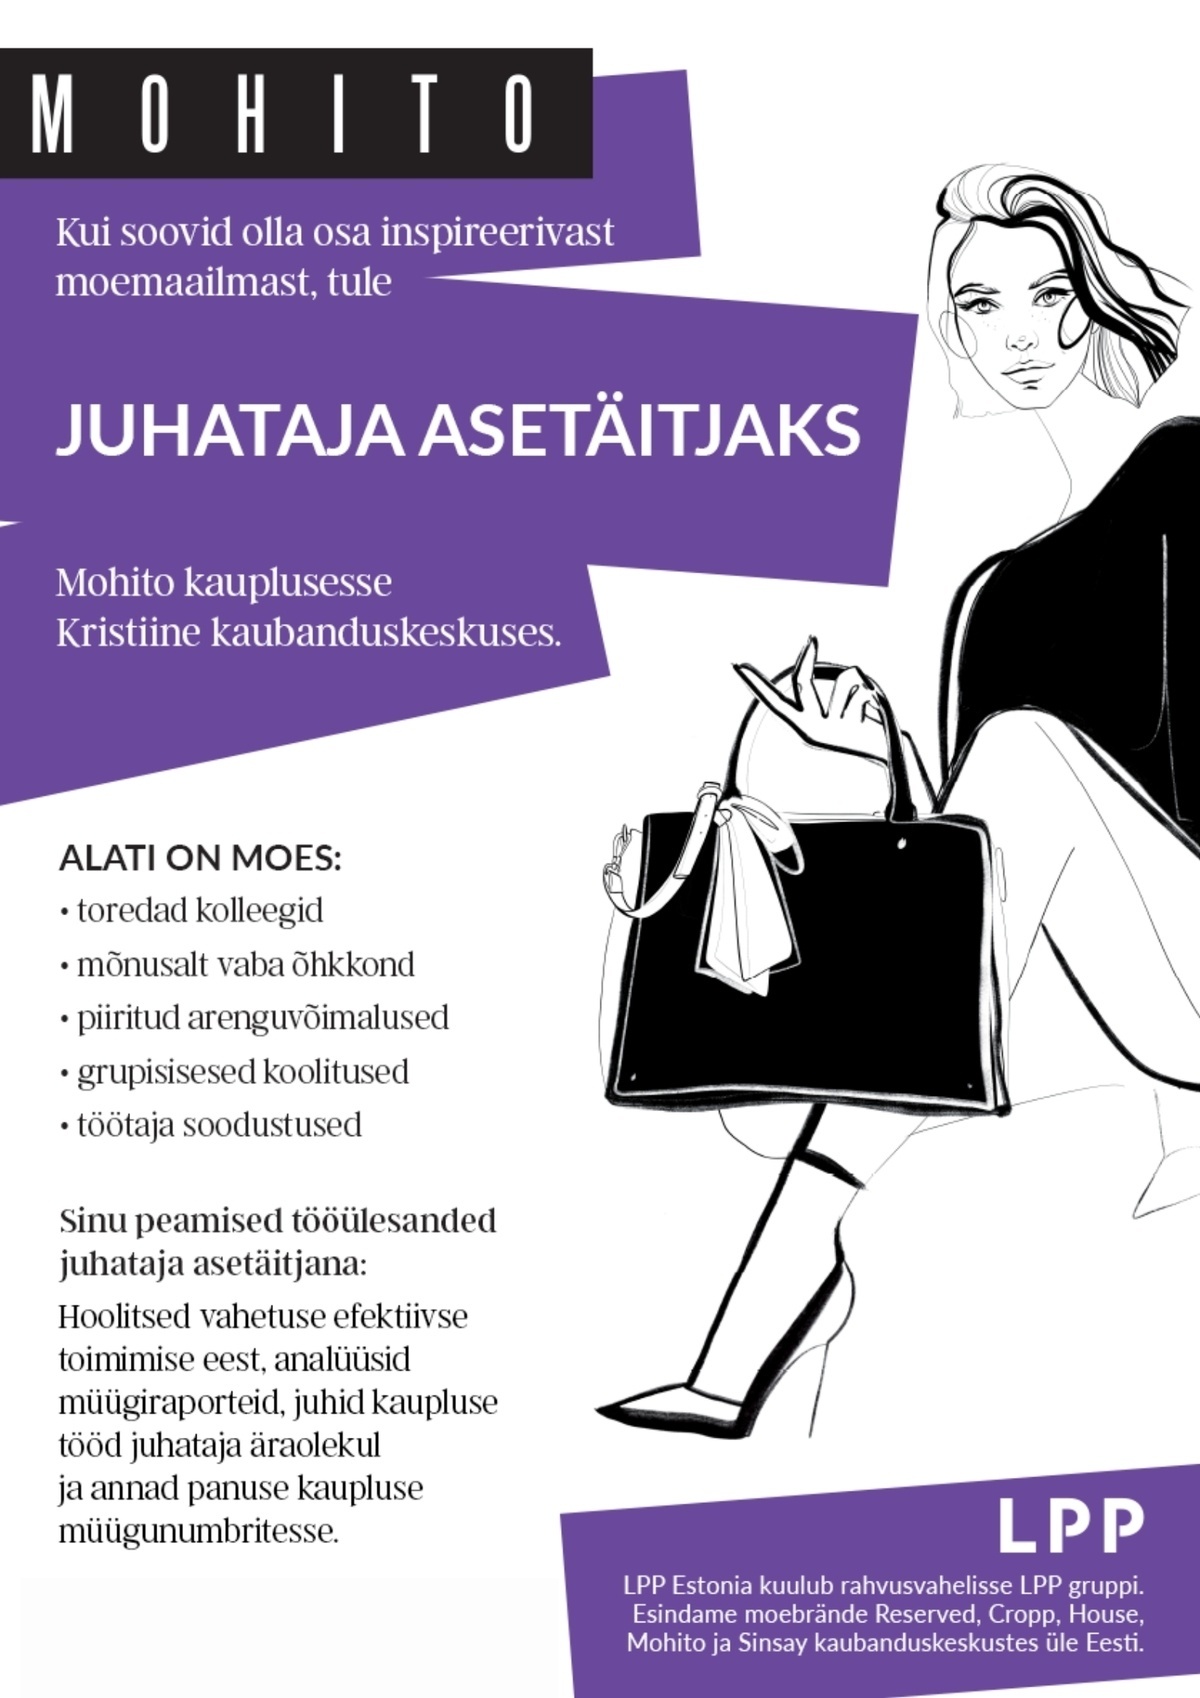 LPP Estonia OÜ Juhataja asetäitja Kristiine keskuse MOHITO kauplusesse!